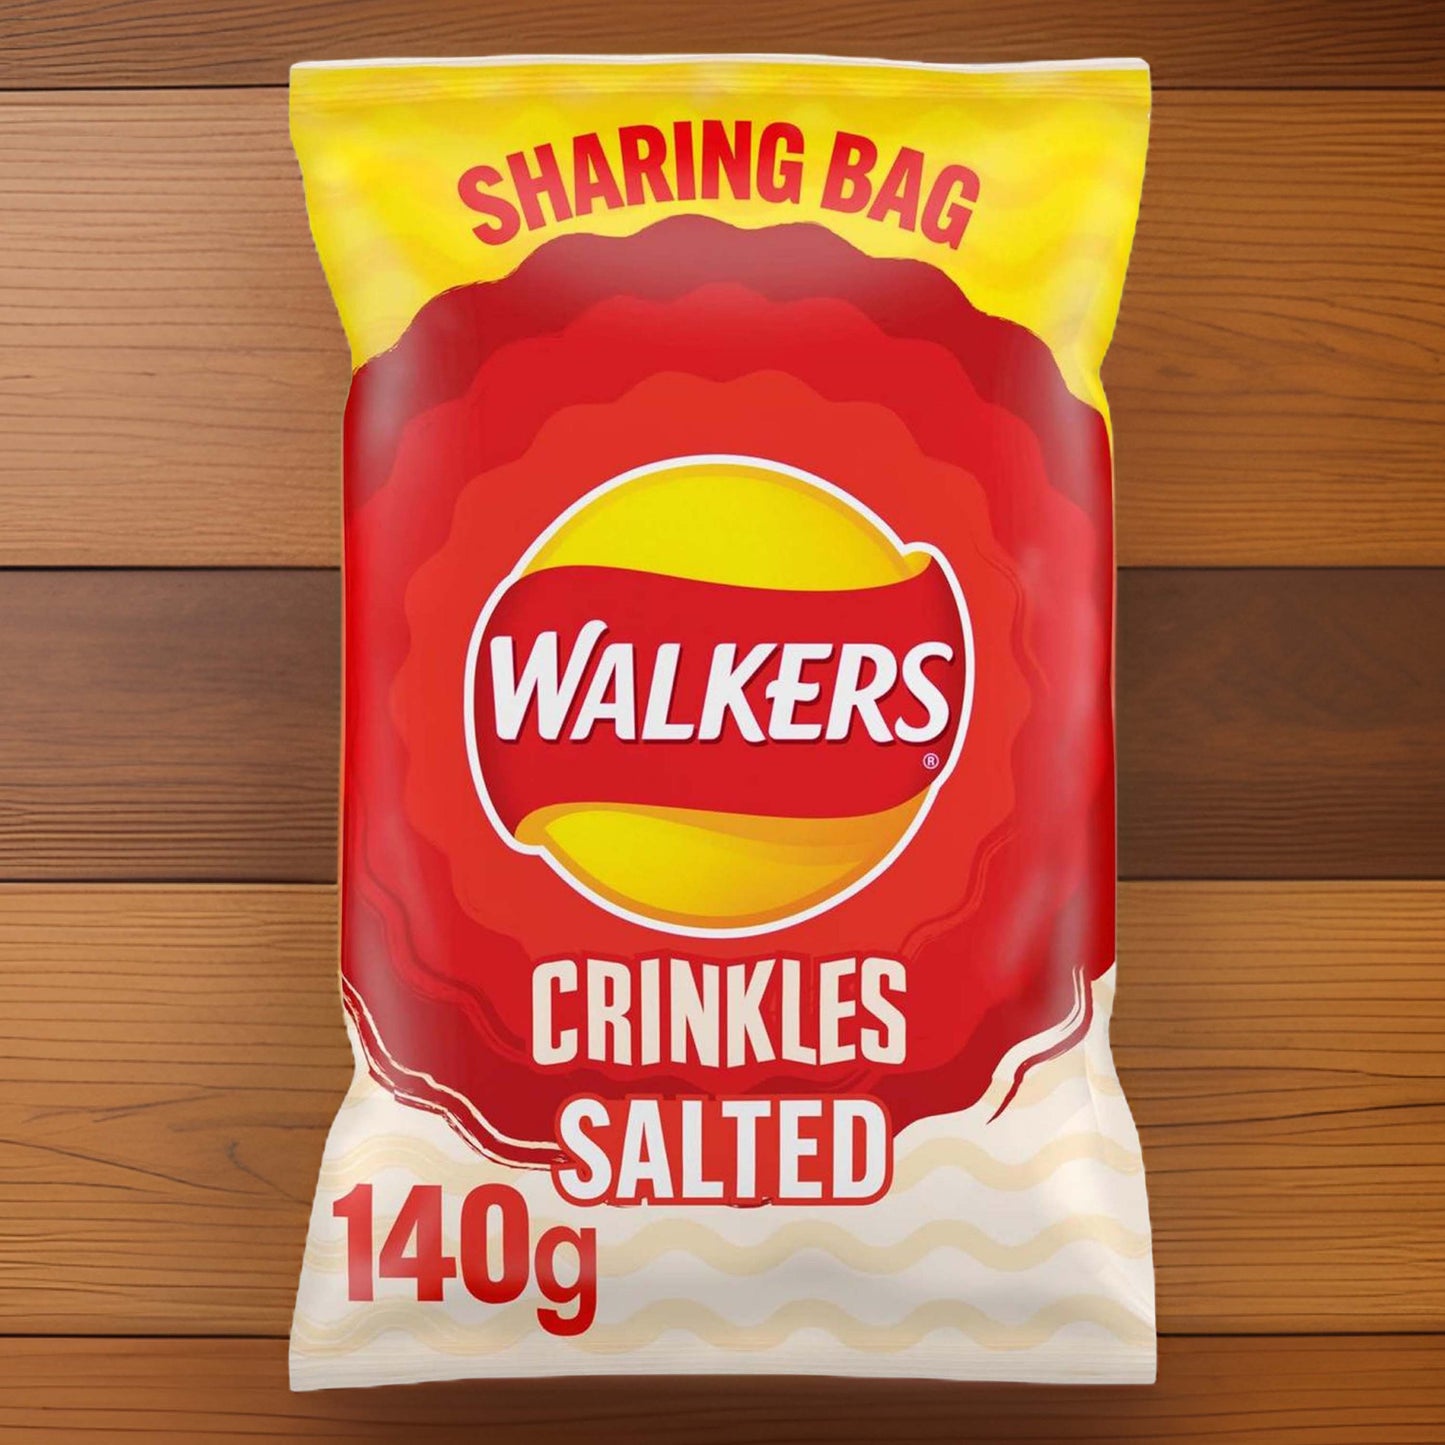 Walkers Crinkles Simply Salted Sharing Bag Crisps - 140g - BRITISH CRISPS